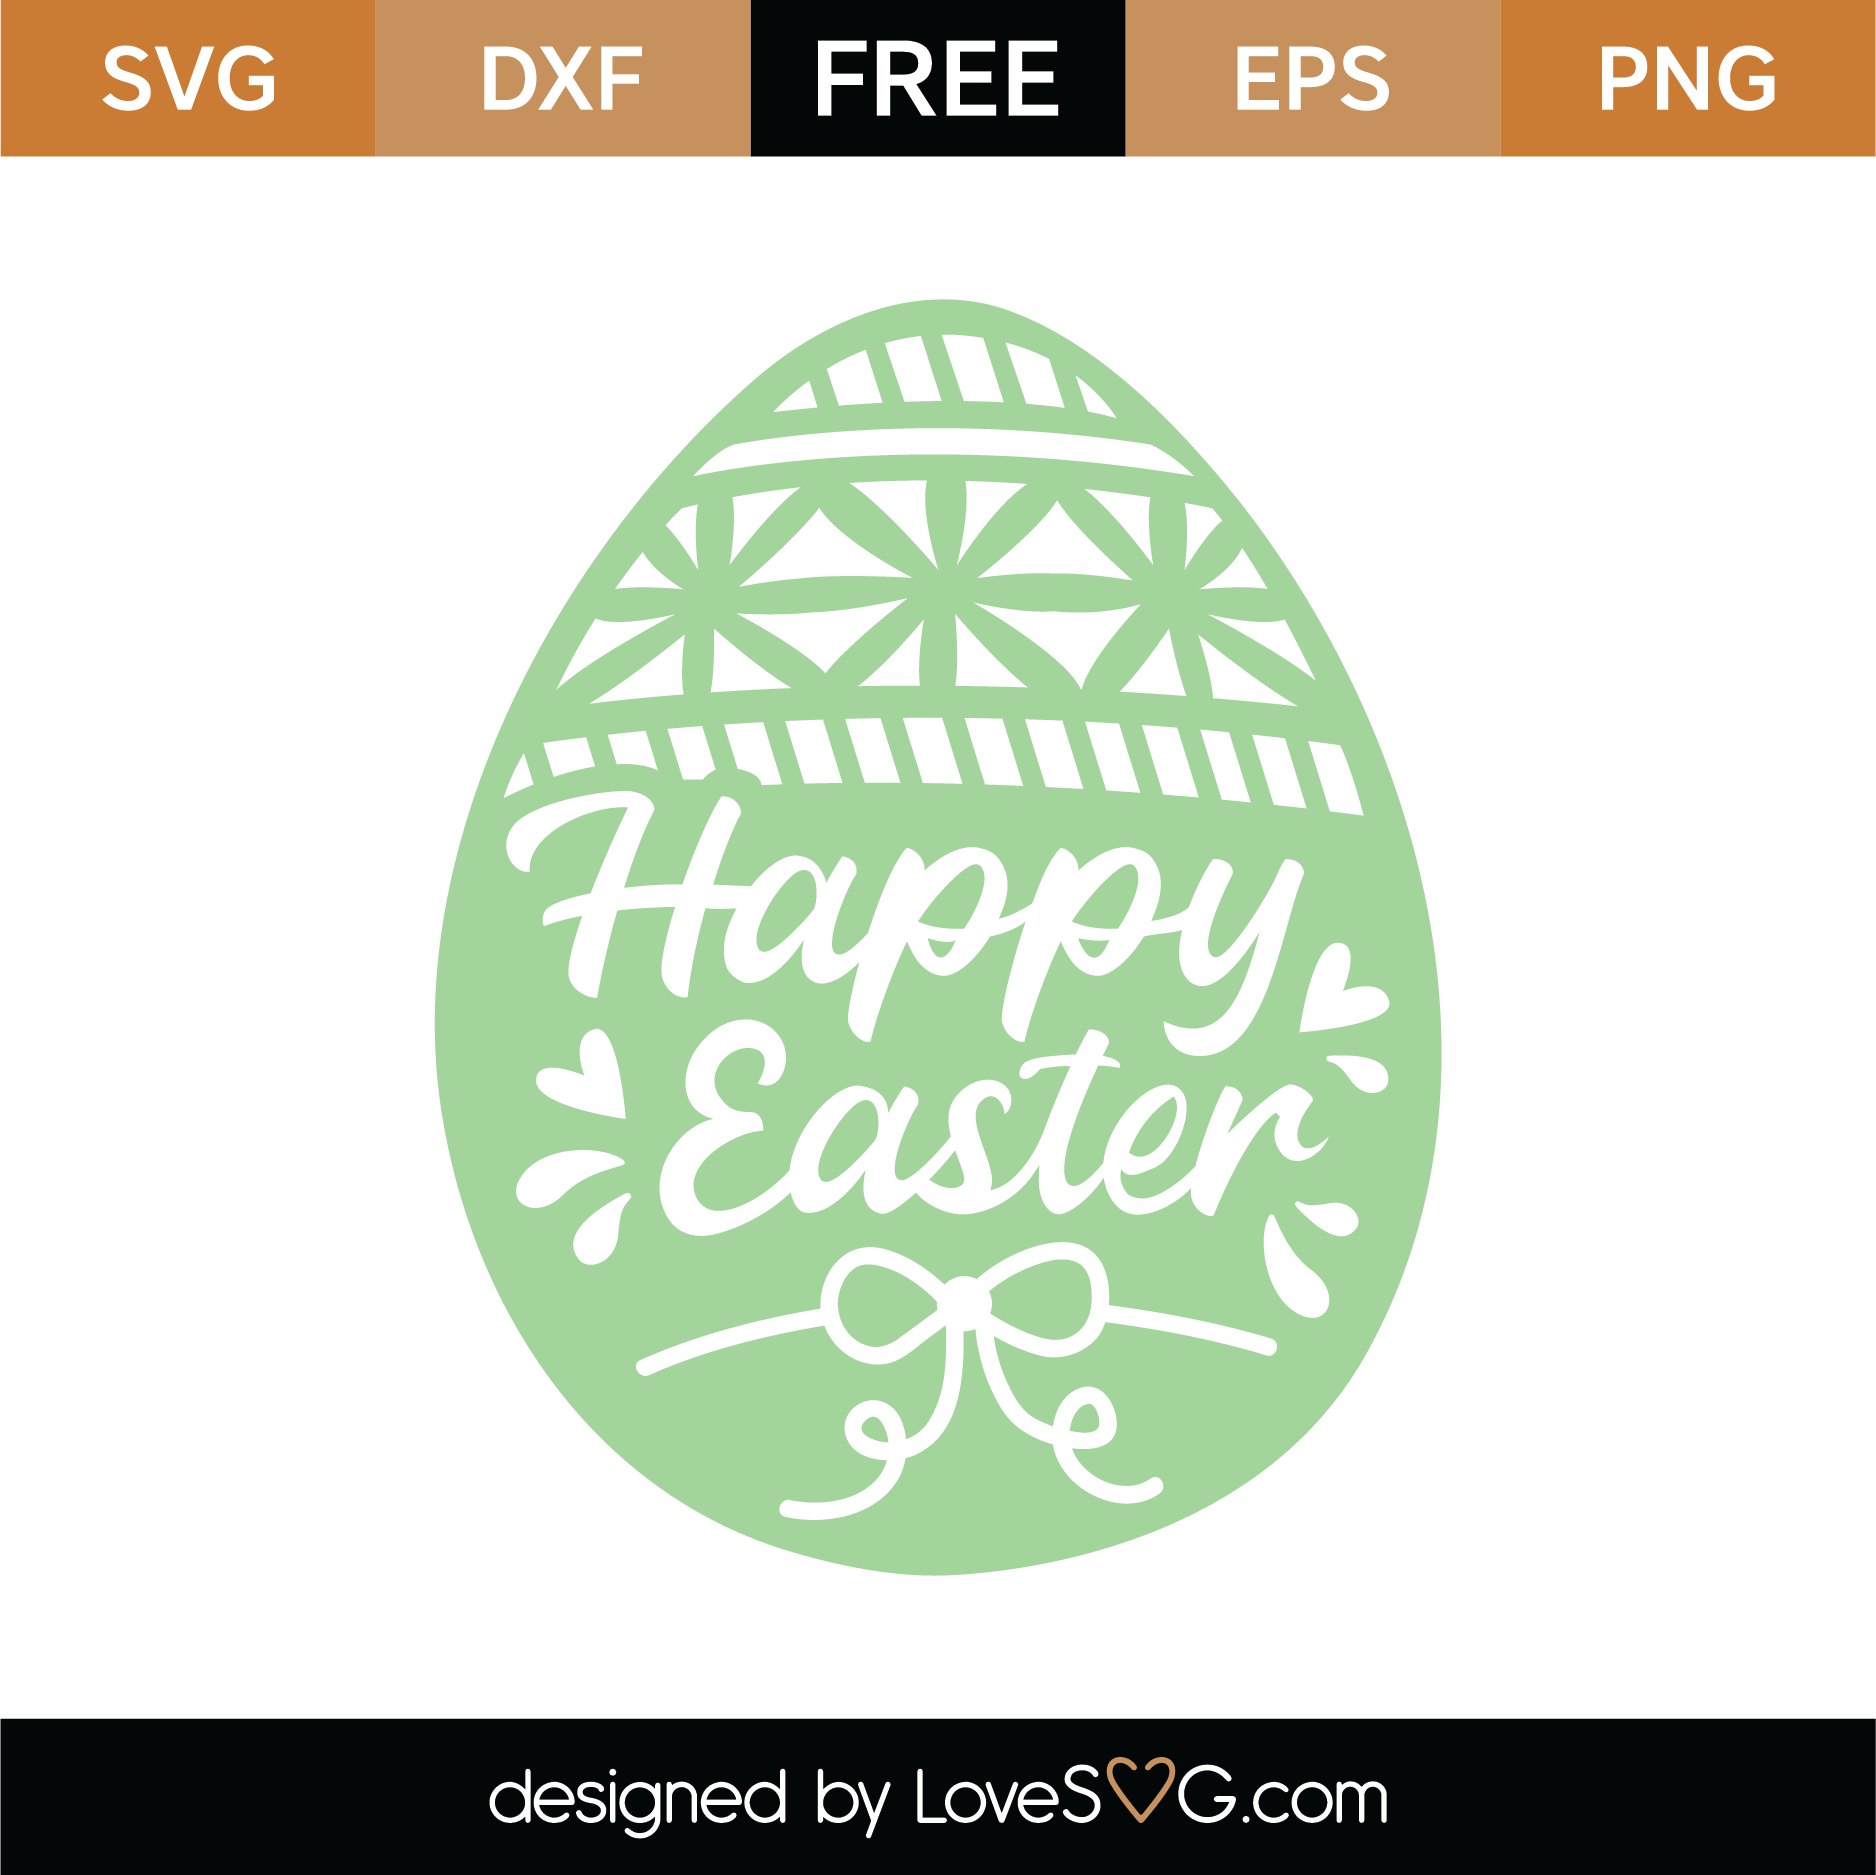 Download Free Happy Easter Egg SVG Cut File | Lovesvg.com